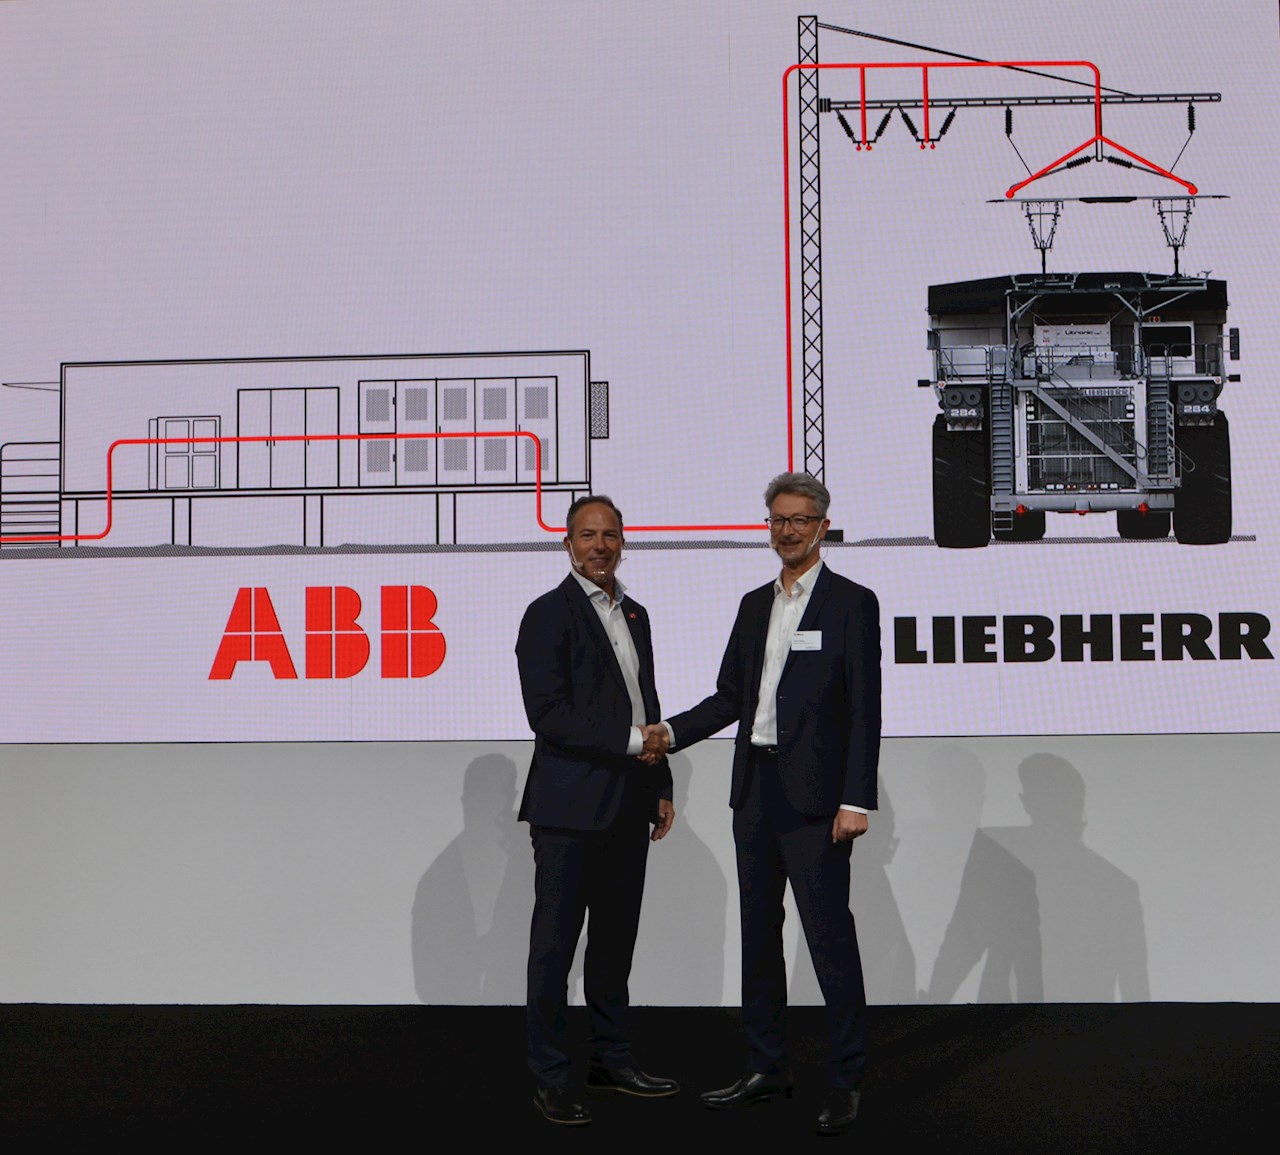 ABB junto a Liebherr Mining Equipment desarrollarán soluciones para maquinaria de minería con cero emisiones netas